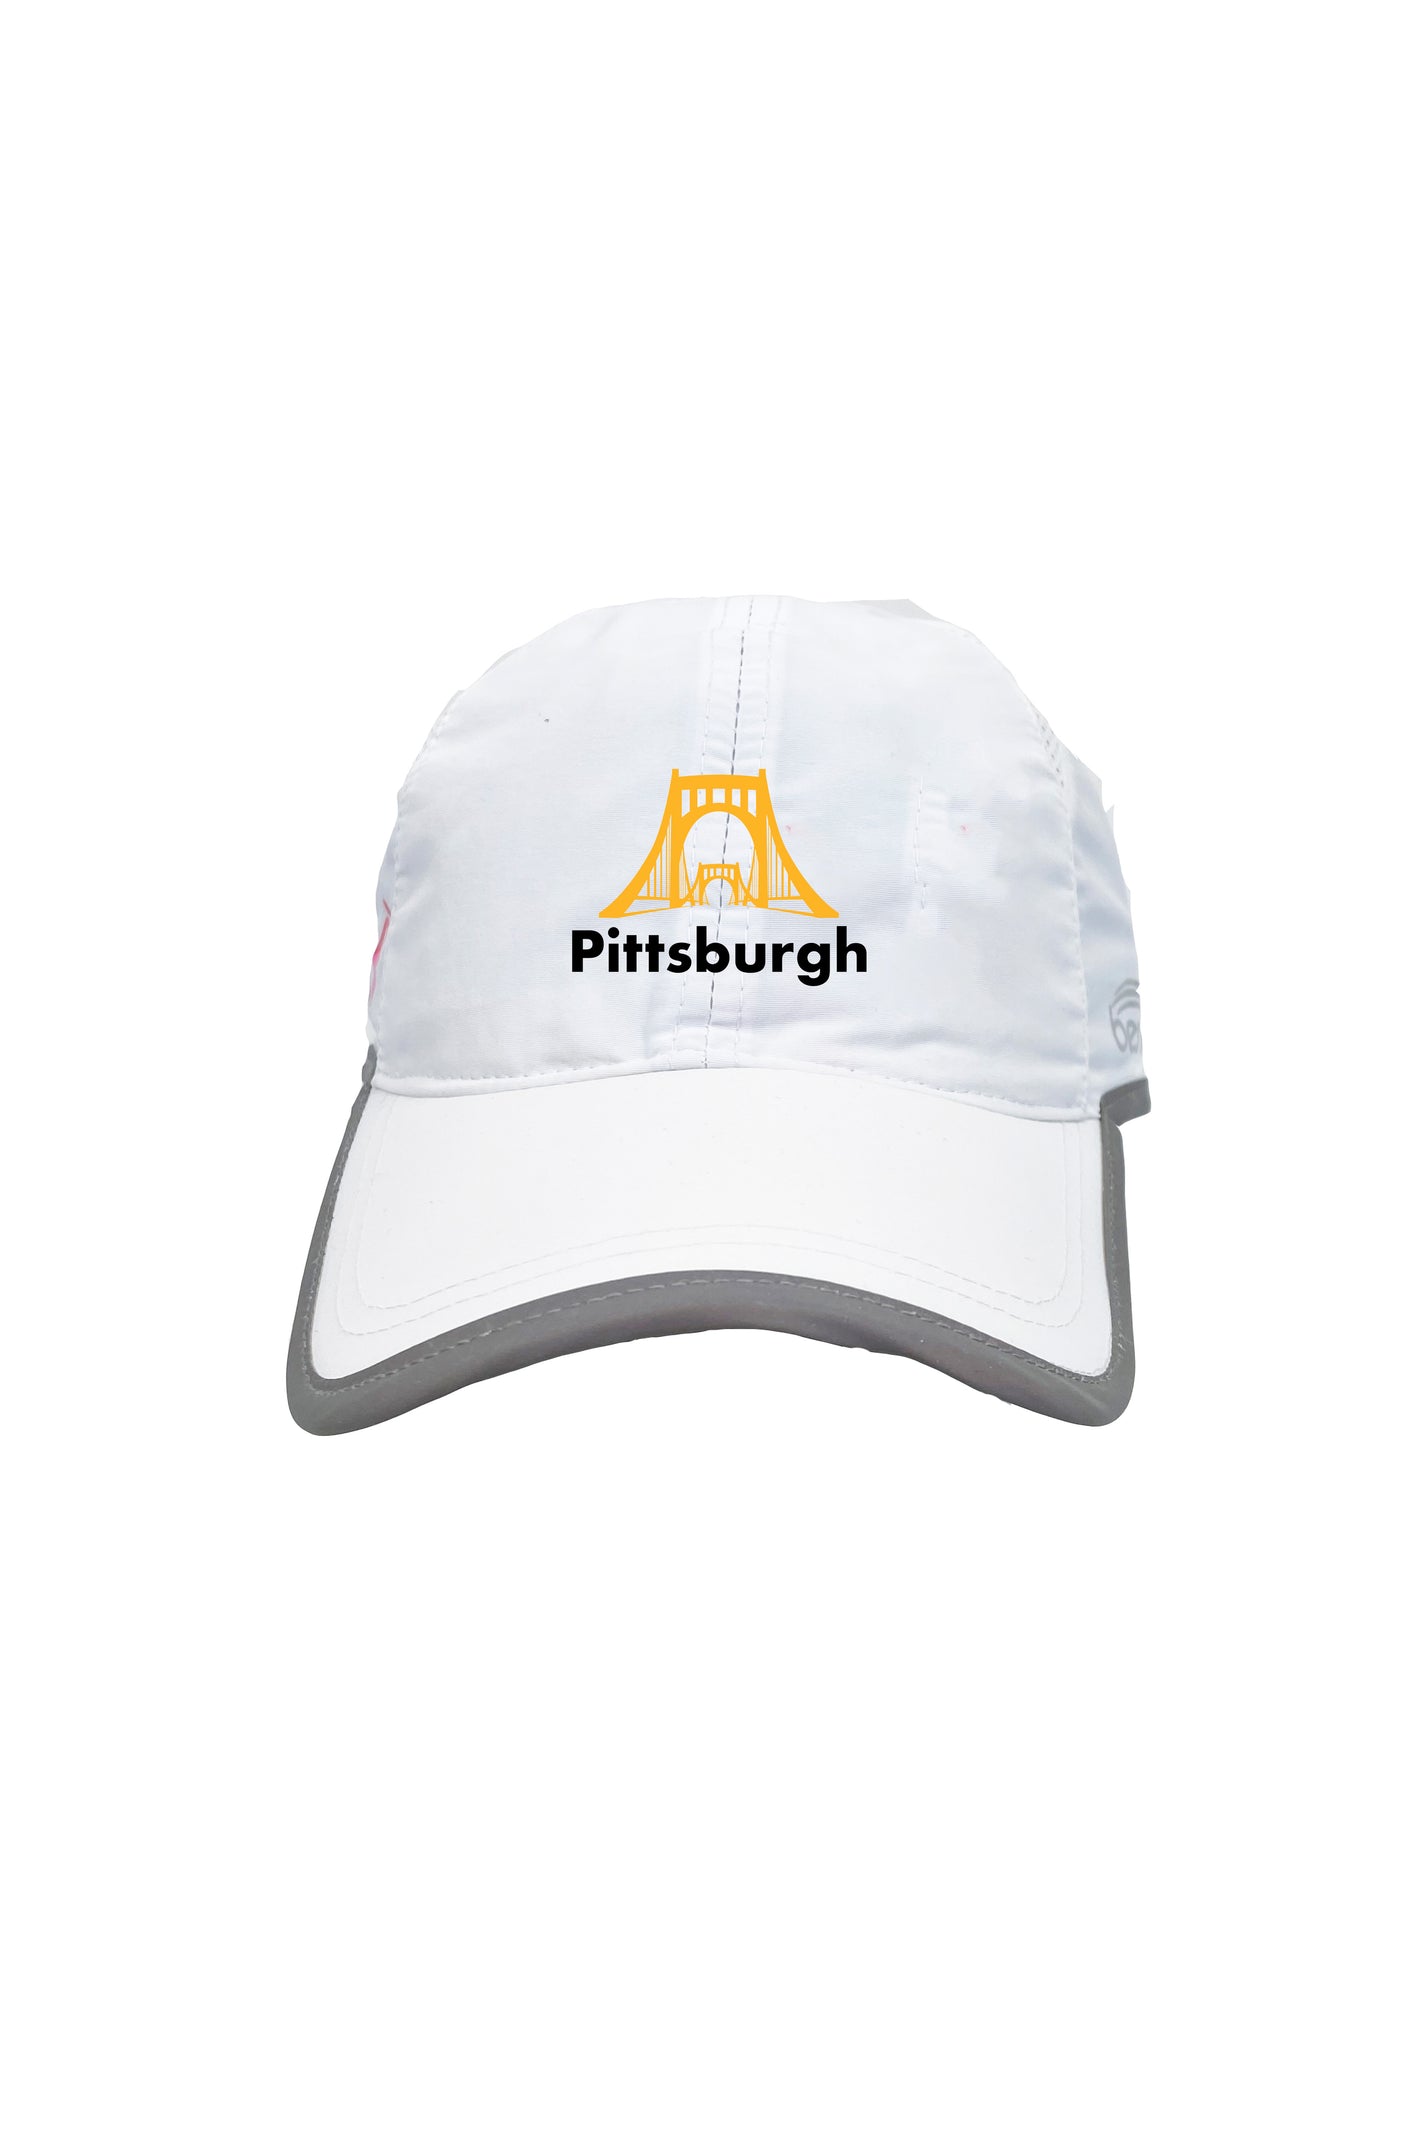 Pittsburgh Bridge Running Hat - White